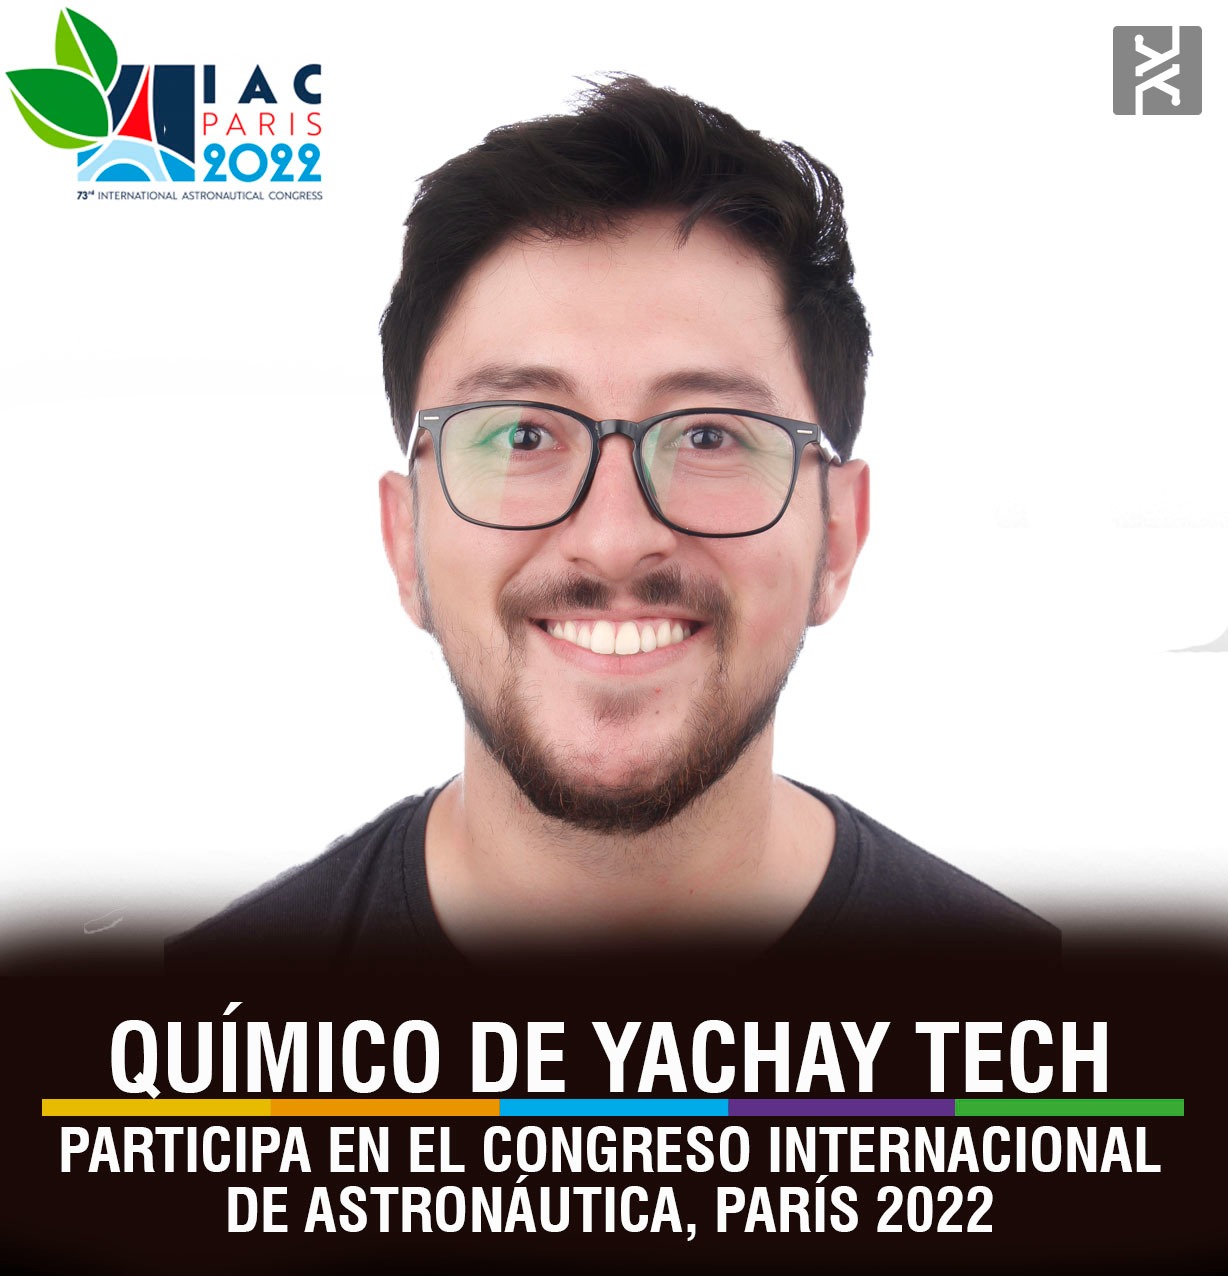 QUÍMICO DE YACHAY TECH PARTICIPA EN EL CONGRESO INTERNACIONAL DE ASTRONÁUTICA, PARÍS 2022